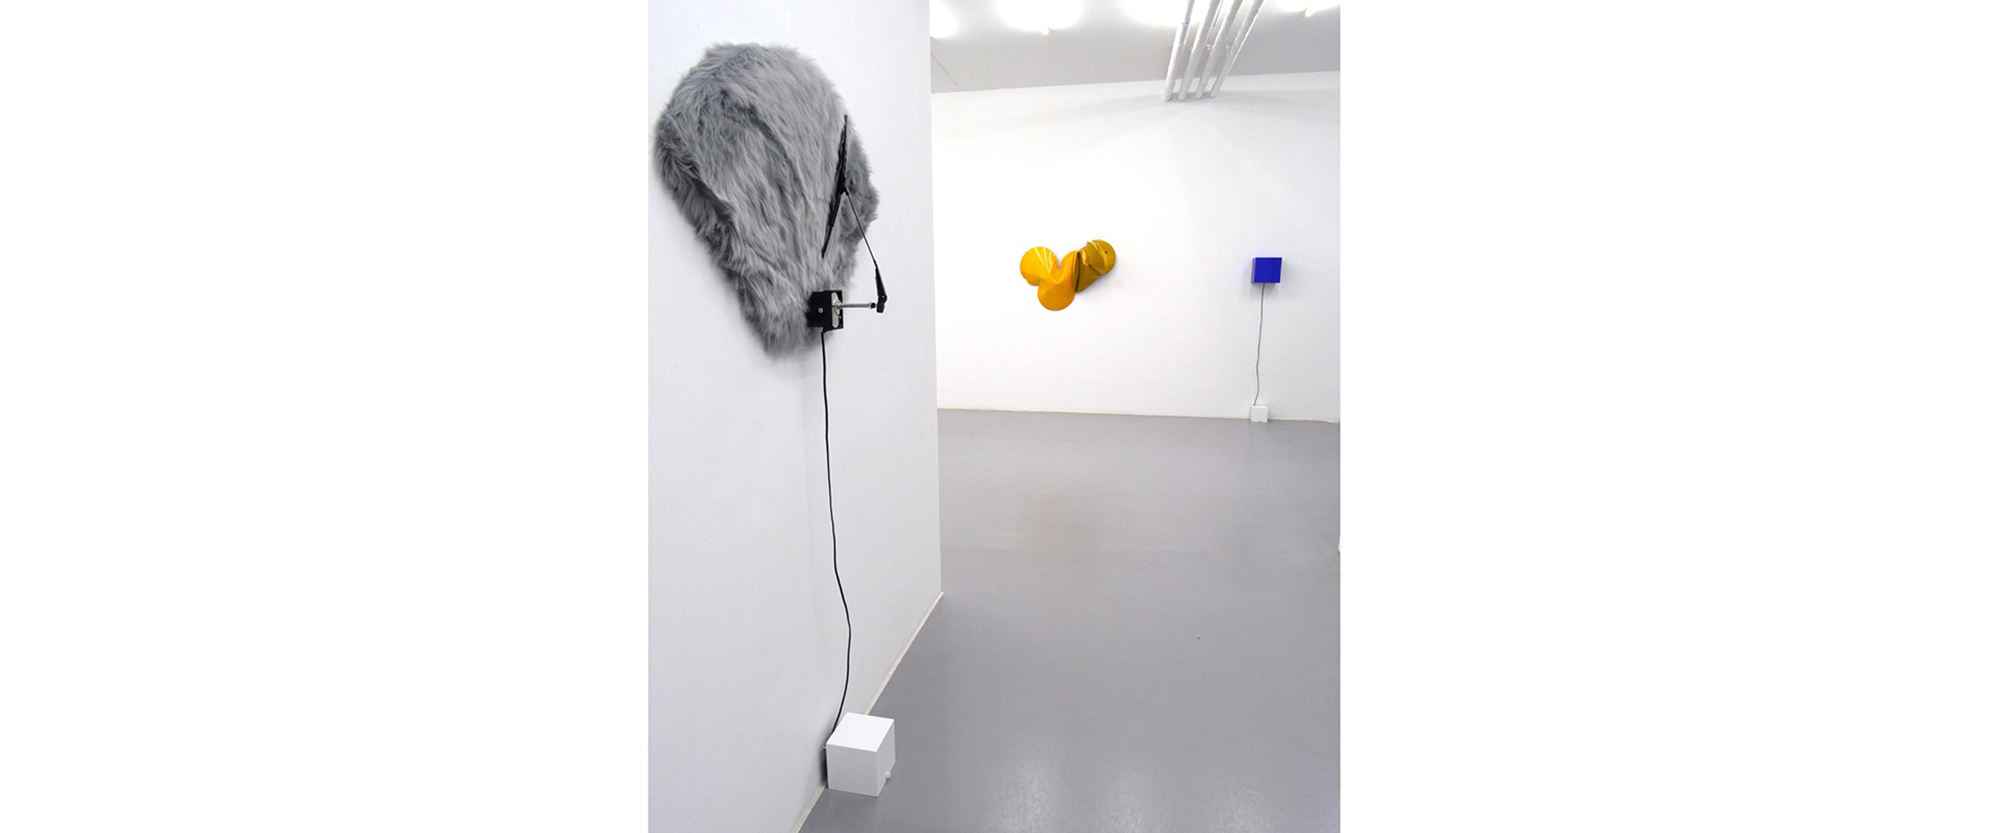 Ausstellungsansicht "Oscillation in Color and Sound", Jeremy Thomas - Pfeifer & Kreutzer, Galerie Renate Bender 2019